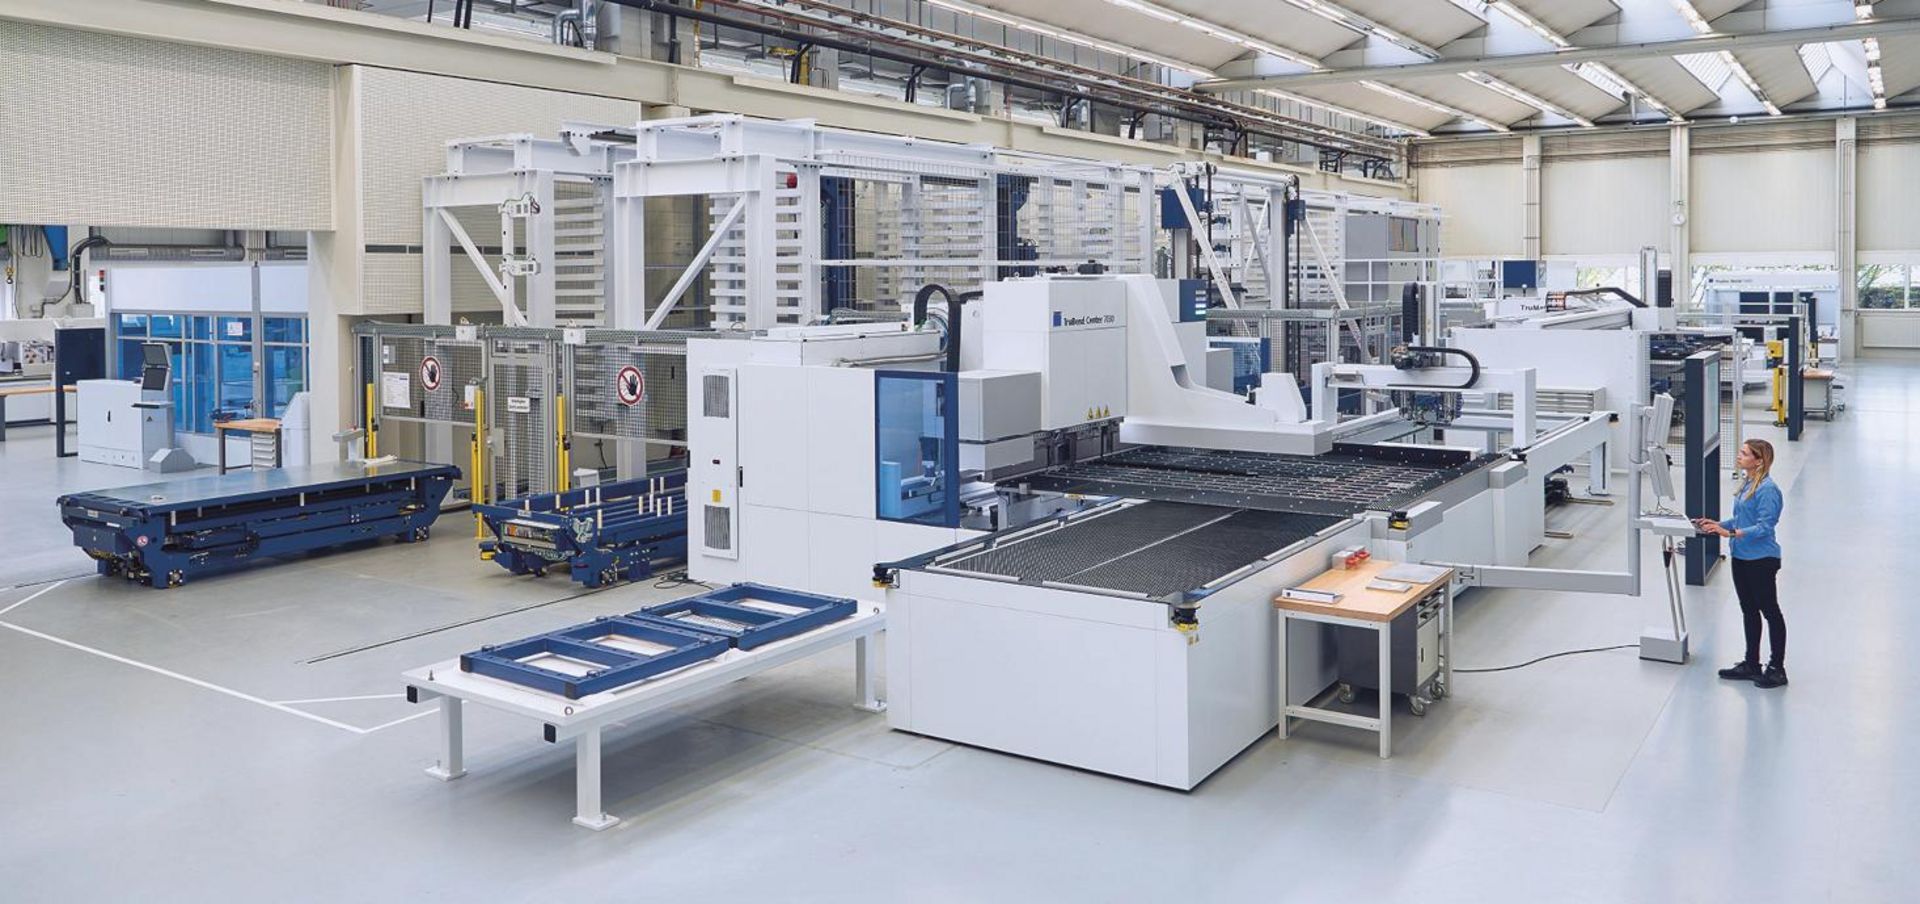 Maschinen in Smart Factory Halle